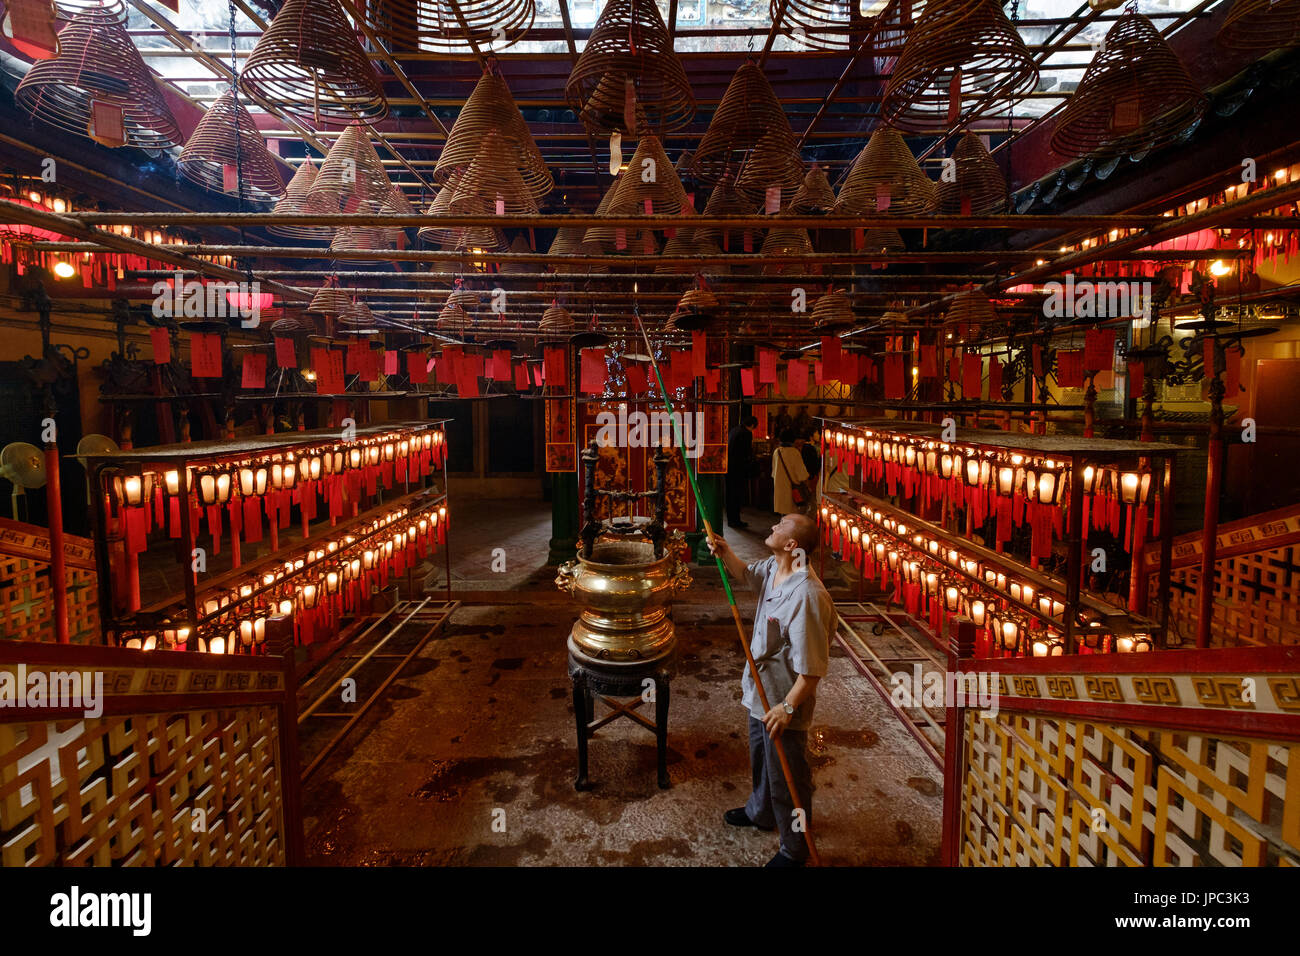 Man Mo temple of Hong Kong Stock Photo